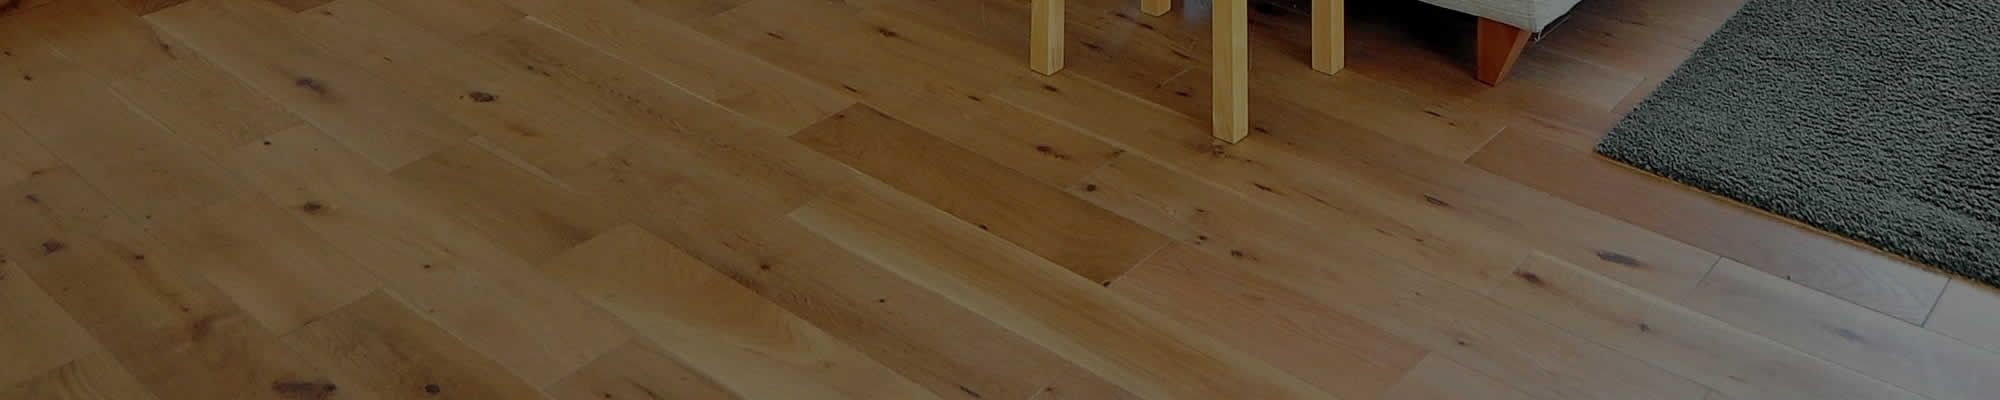 Hardwood Floor Refinishing Menomonee Falls WI